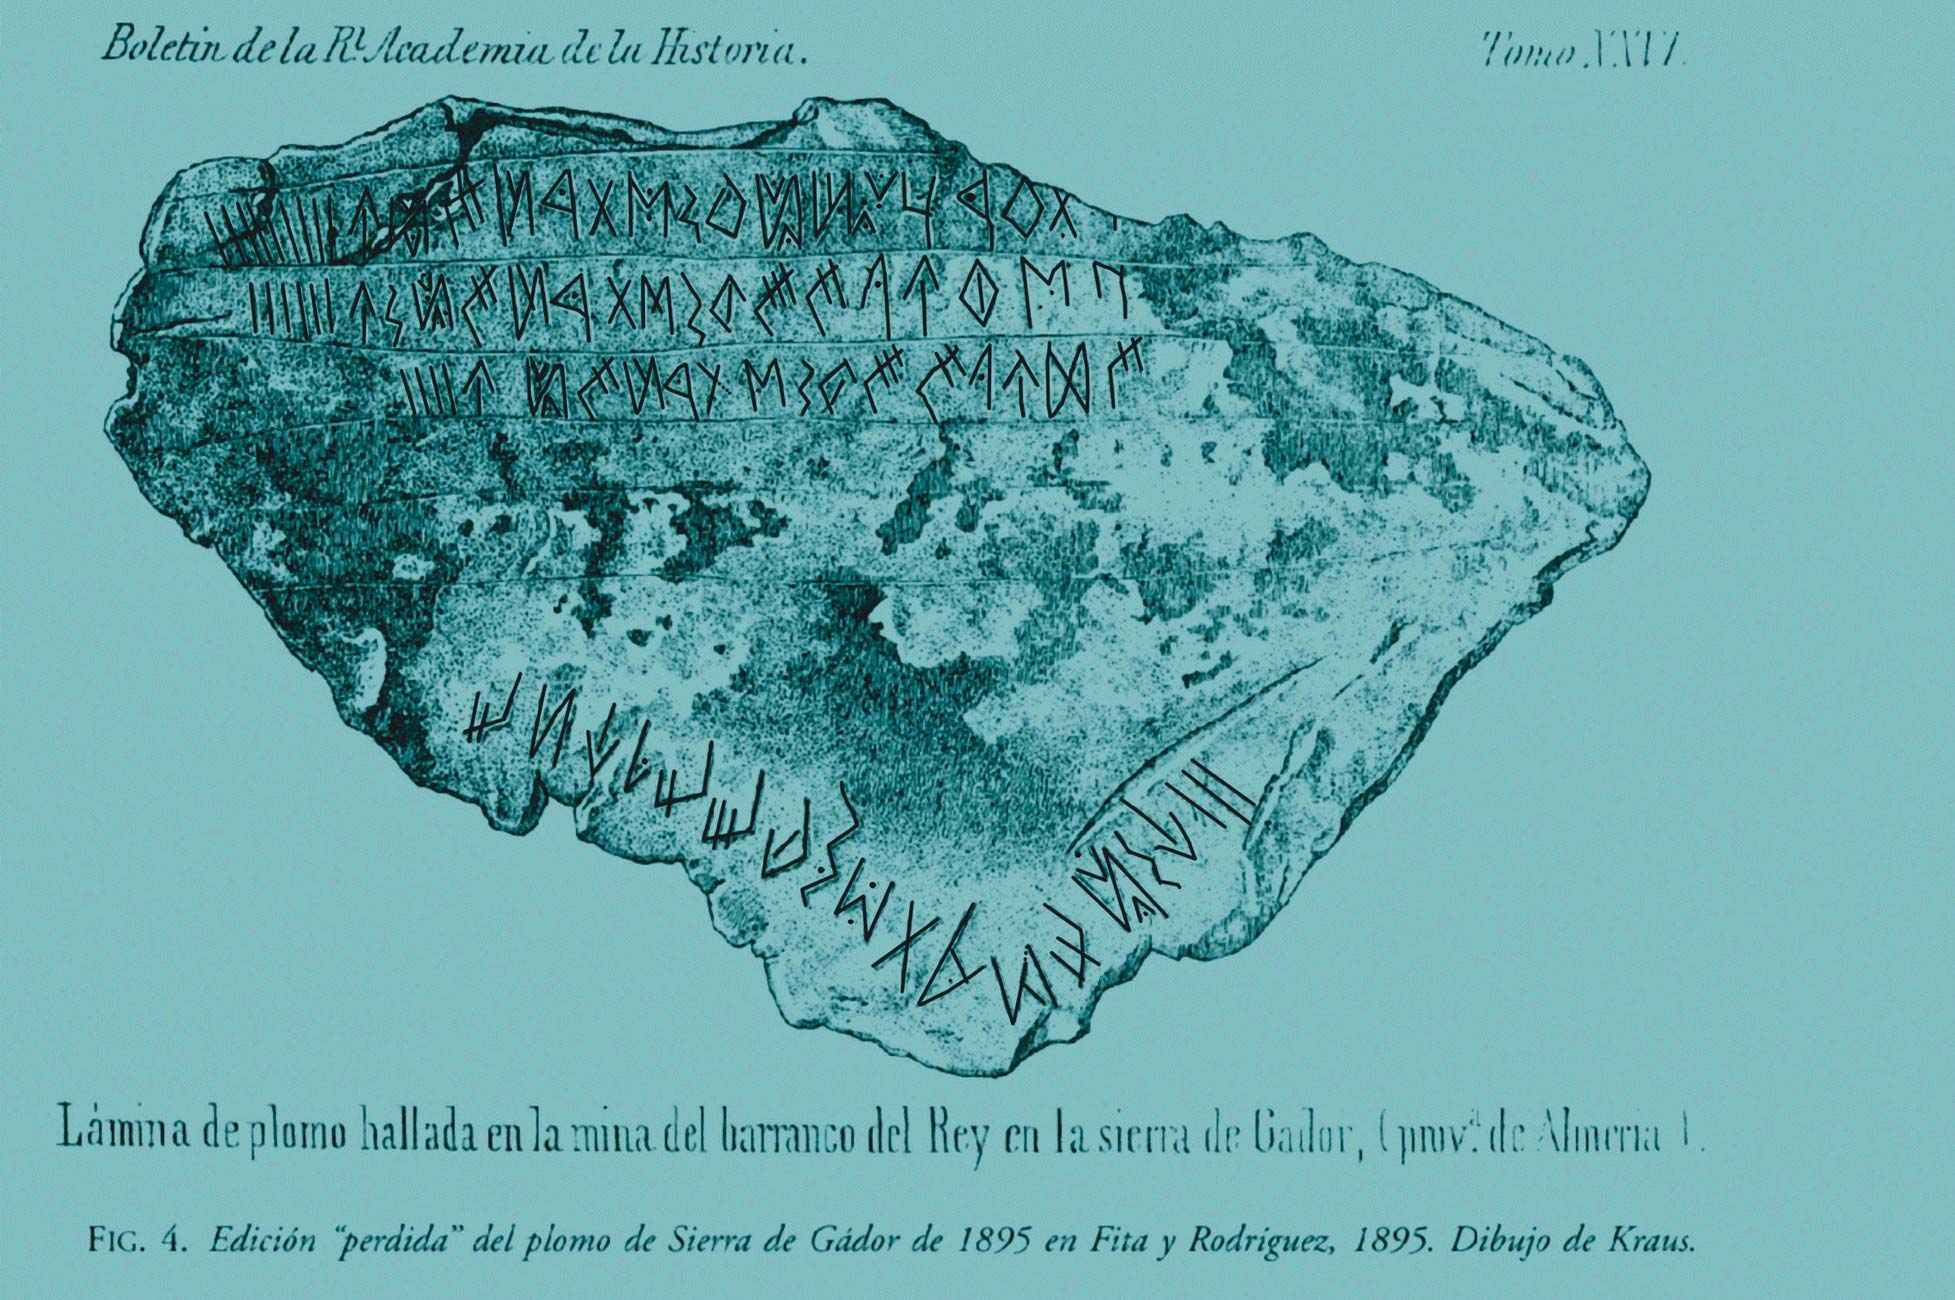  Edición  “perdida”  del  plomo  de  Sierra  de  Gádor  de  1895  en  Fita  y  Rodríguez,  1895.  Dibujo  de  Kraus. Según Rodríguez, 2002, es el primero fidedigno.